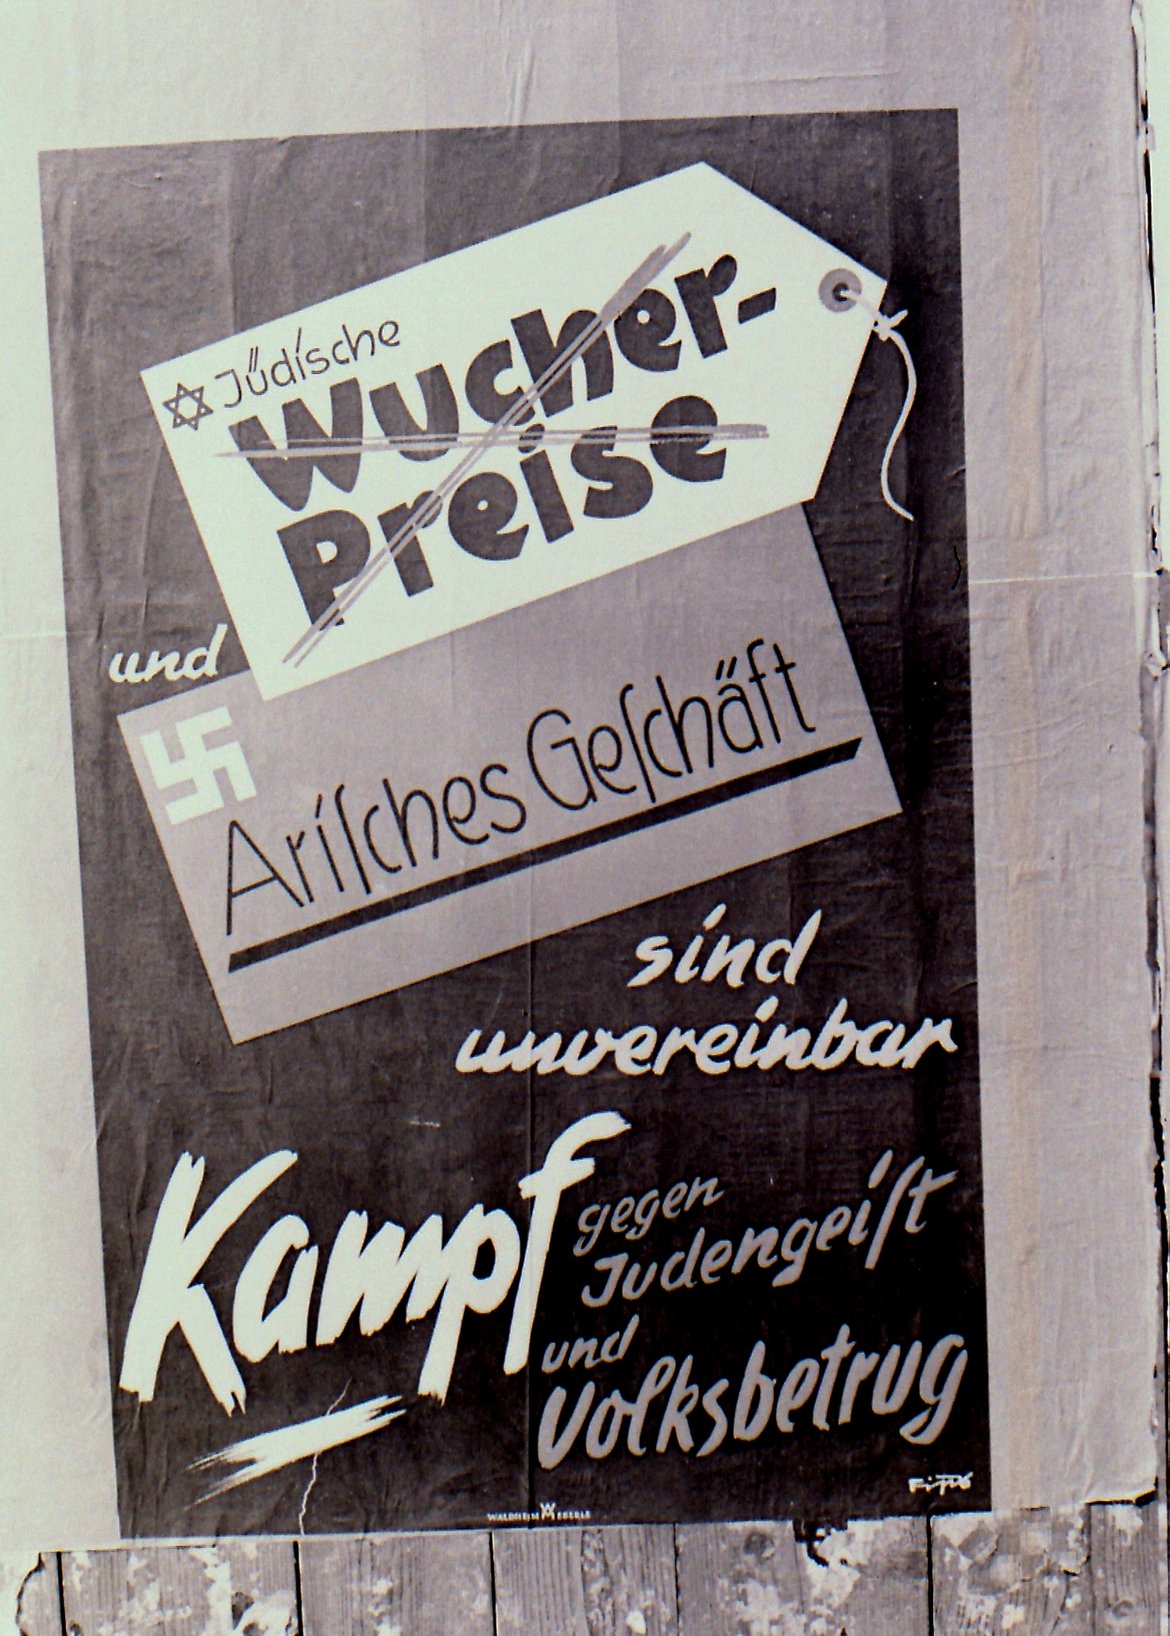 Auf dem Plakat steht: "Jüdische Wucherpreise und Arisches Geschäft sind unvereinbar" darunter "Kampf gegen Judengeist und Volksbetrug"